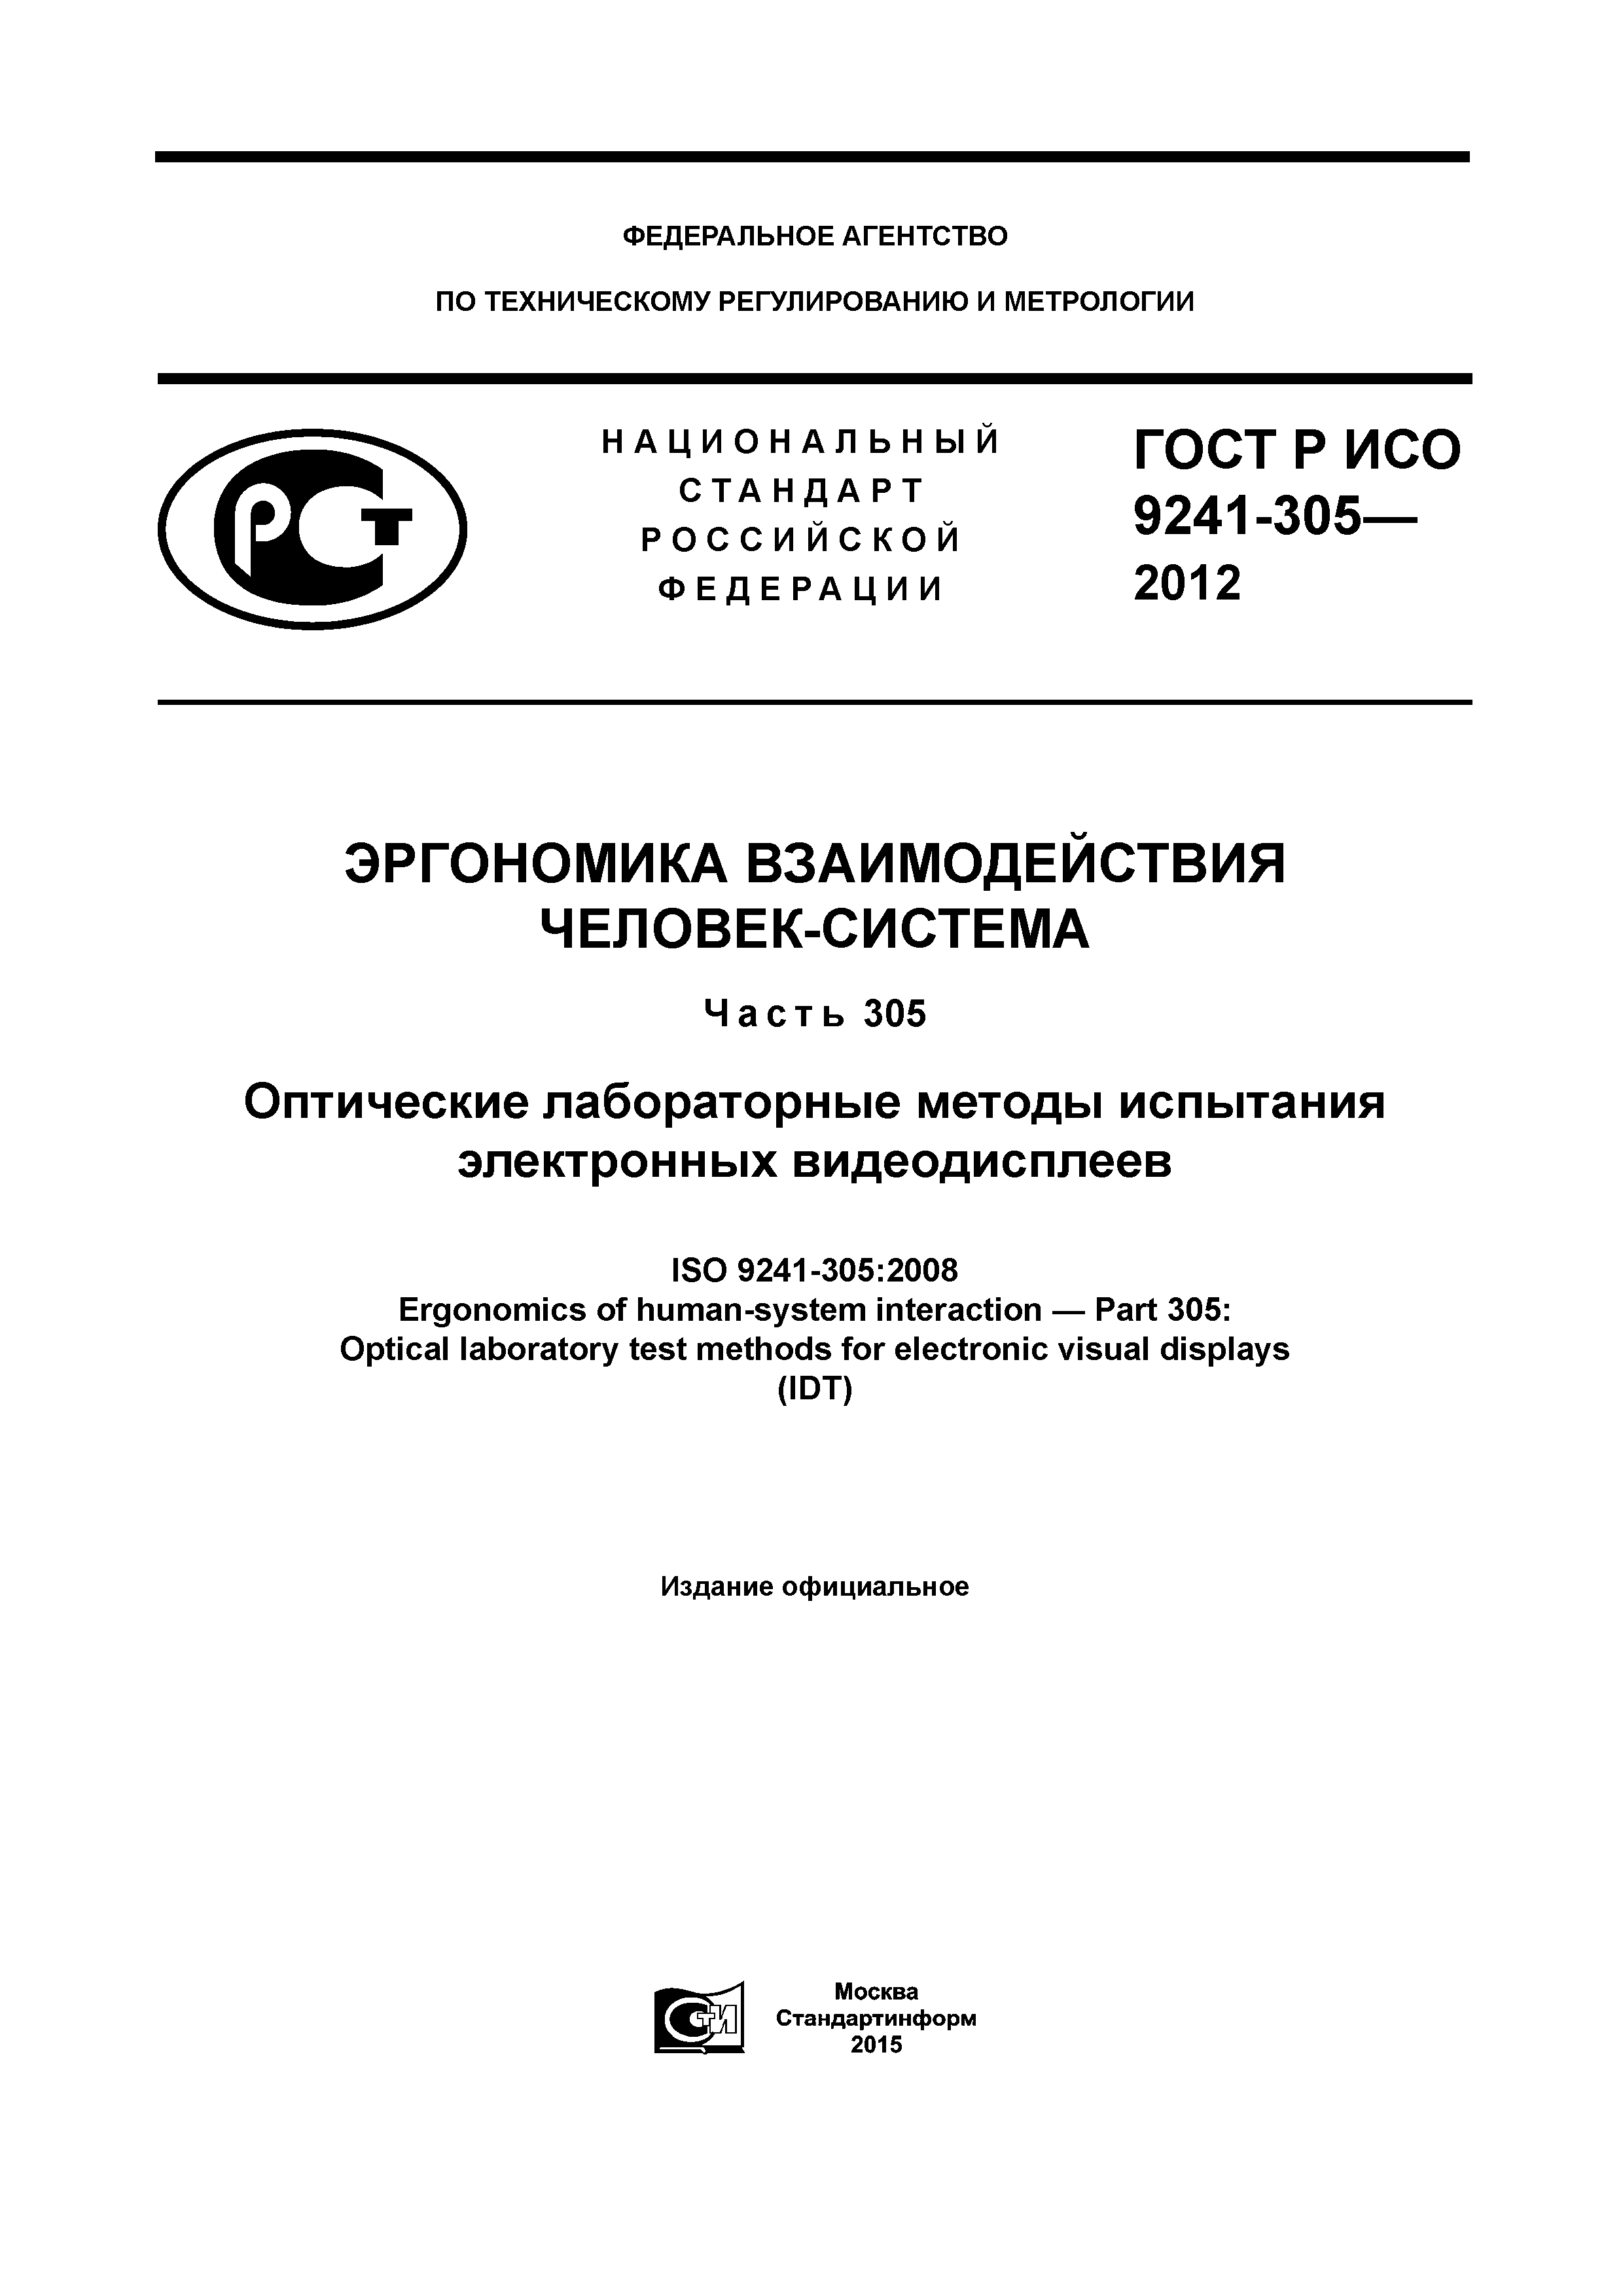 ГОСТ Р ИСО 9241-305-2012